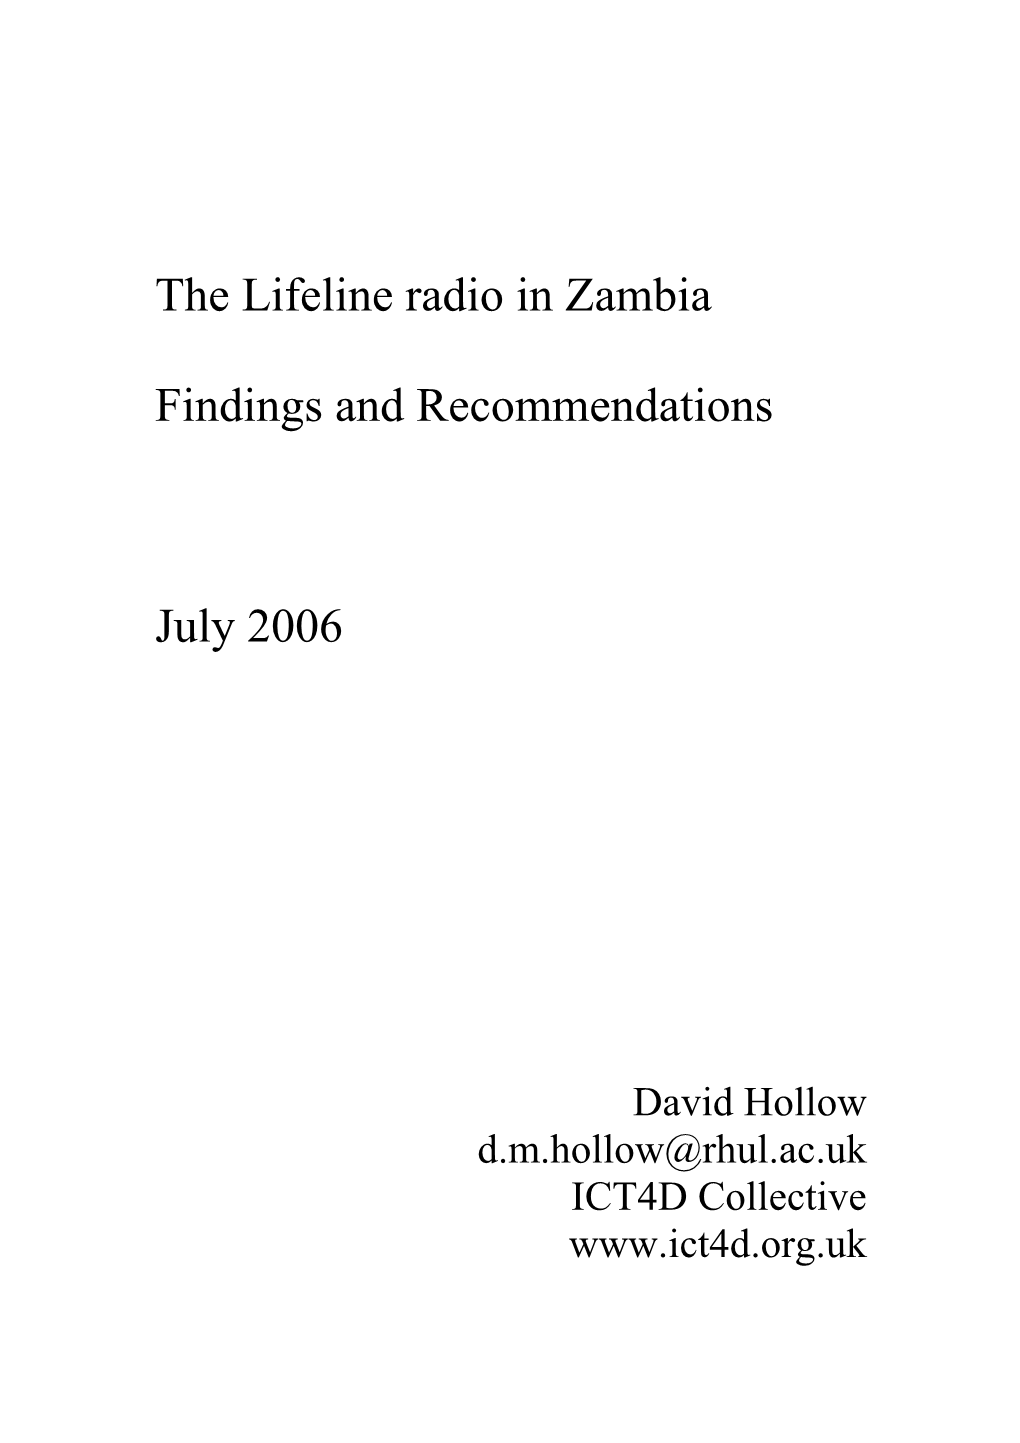 The Lifeline Radio in Zamia